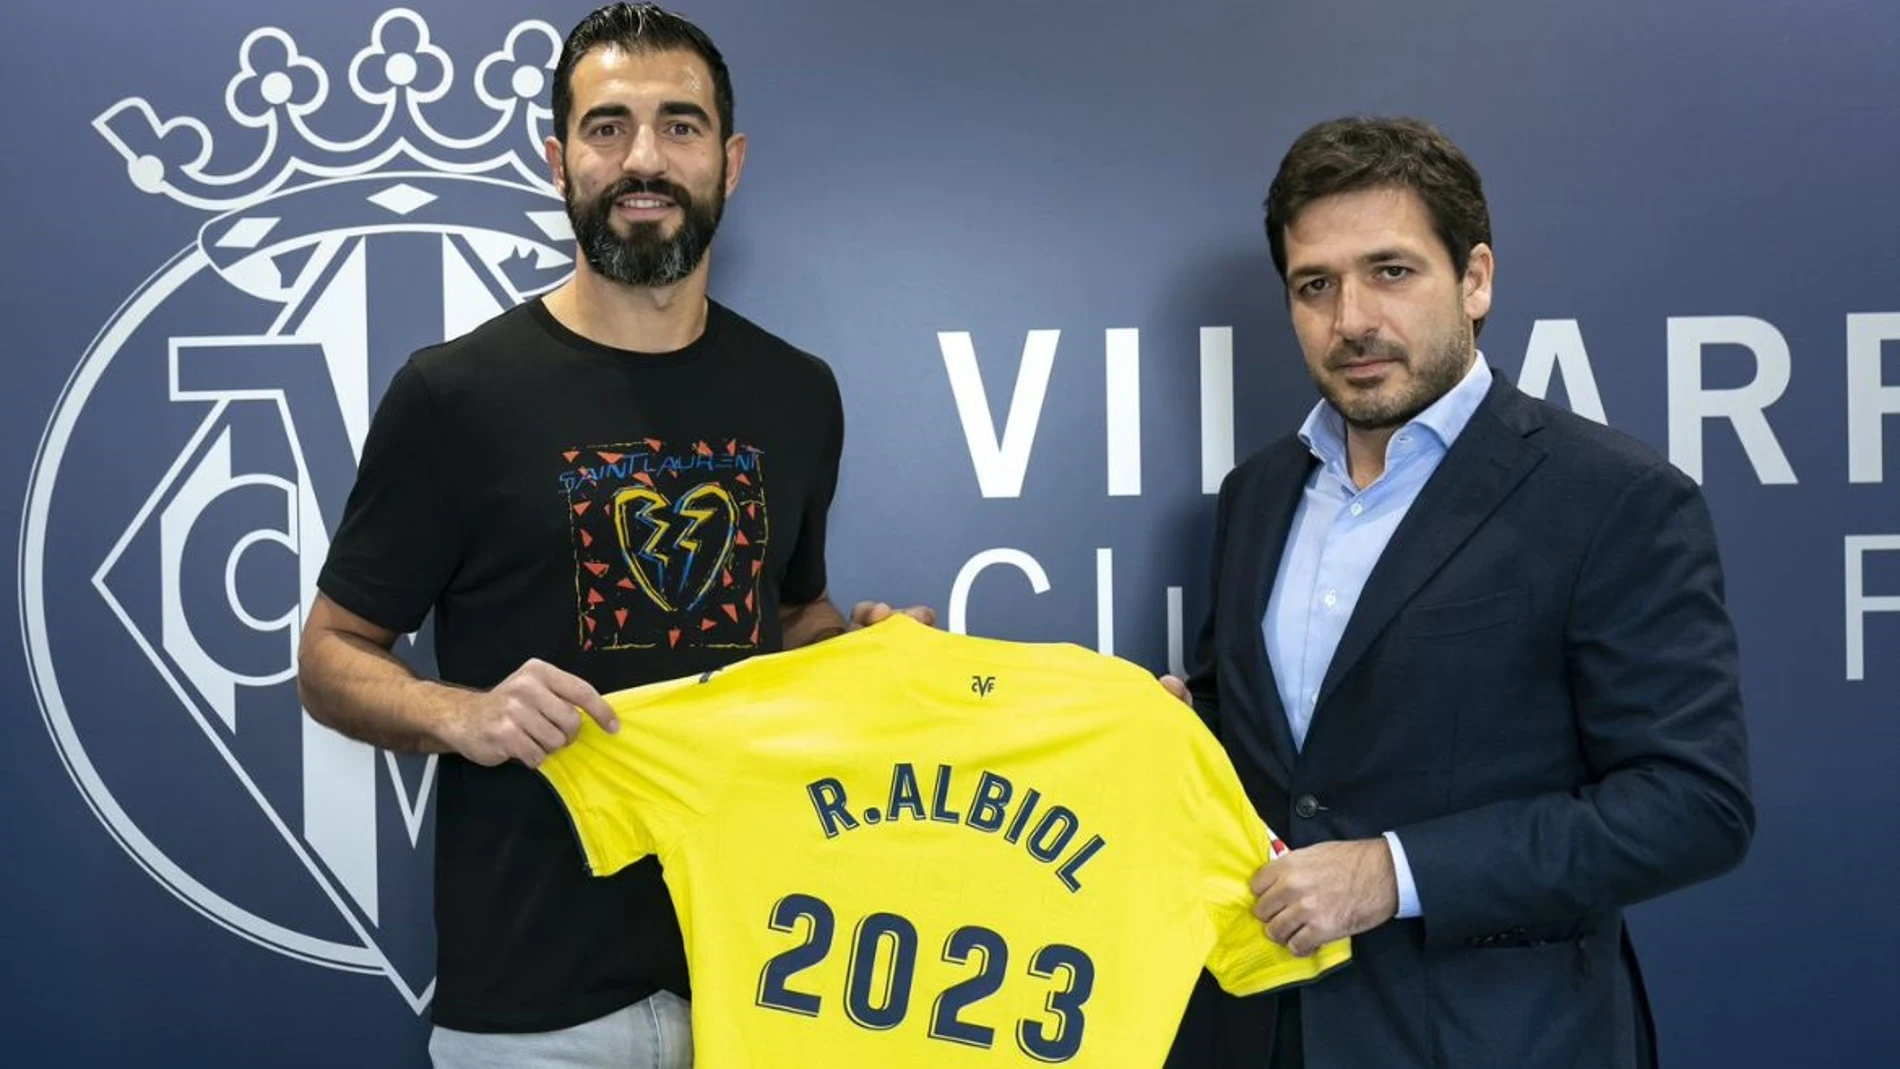 El futbolista Raúl Albiol renueva con el Villarreal hasta 2023.